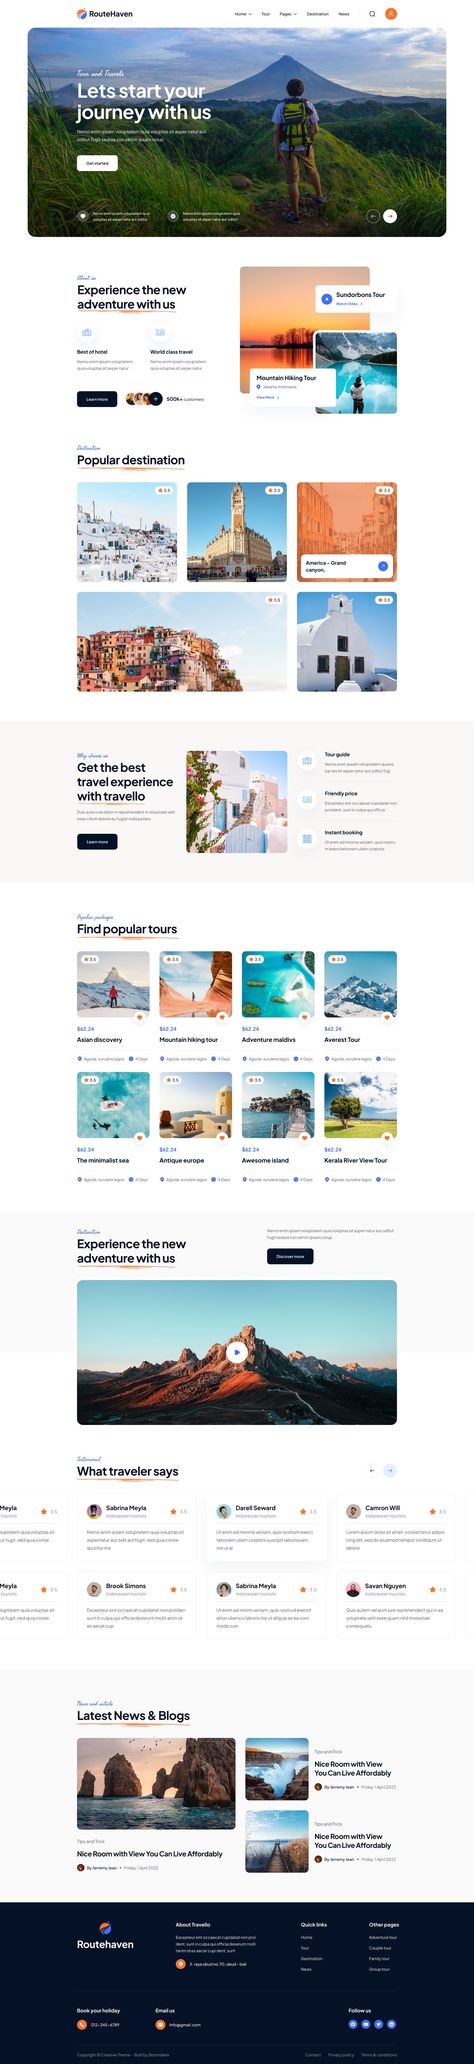 RouteHaven - Travel & Tour Booking Figma Template Web Layout, Design, Web Design Trends, Web Design, Homepage Design, Ui Design Website, Web Layout Design, Web Tour, Web Design Inspiration